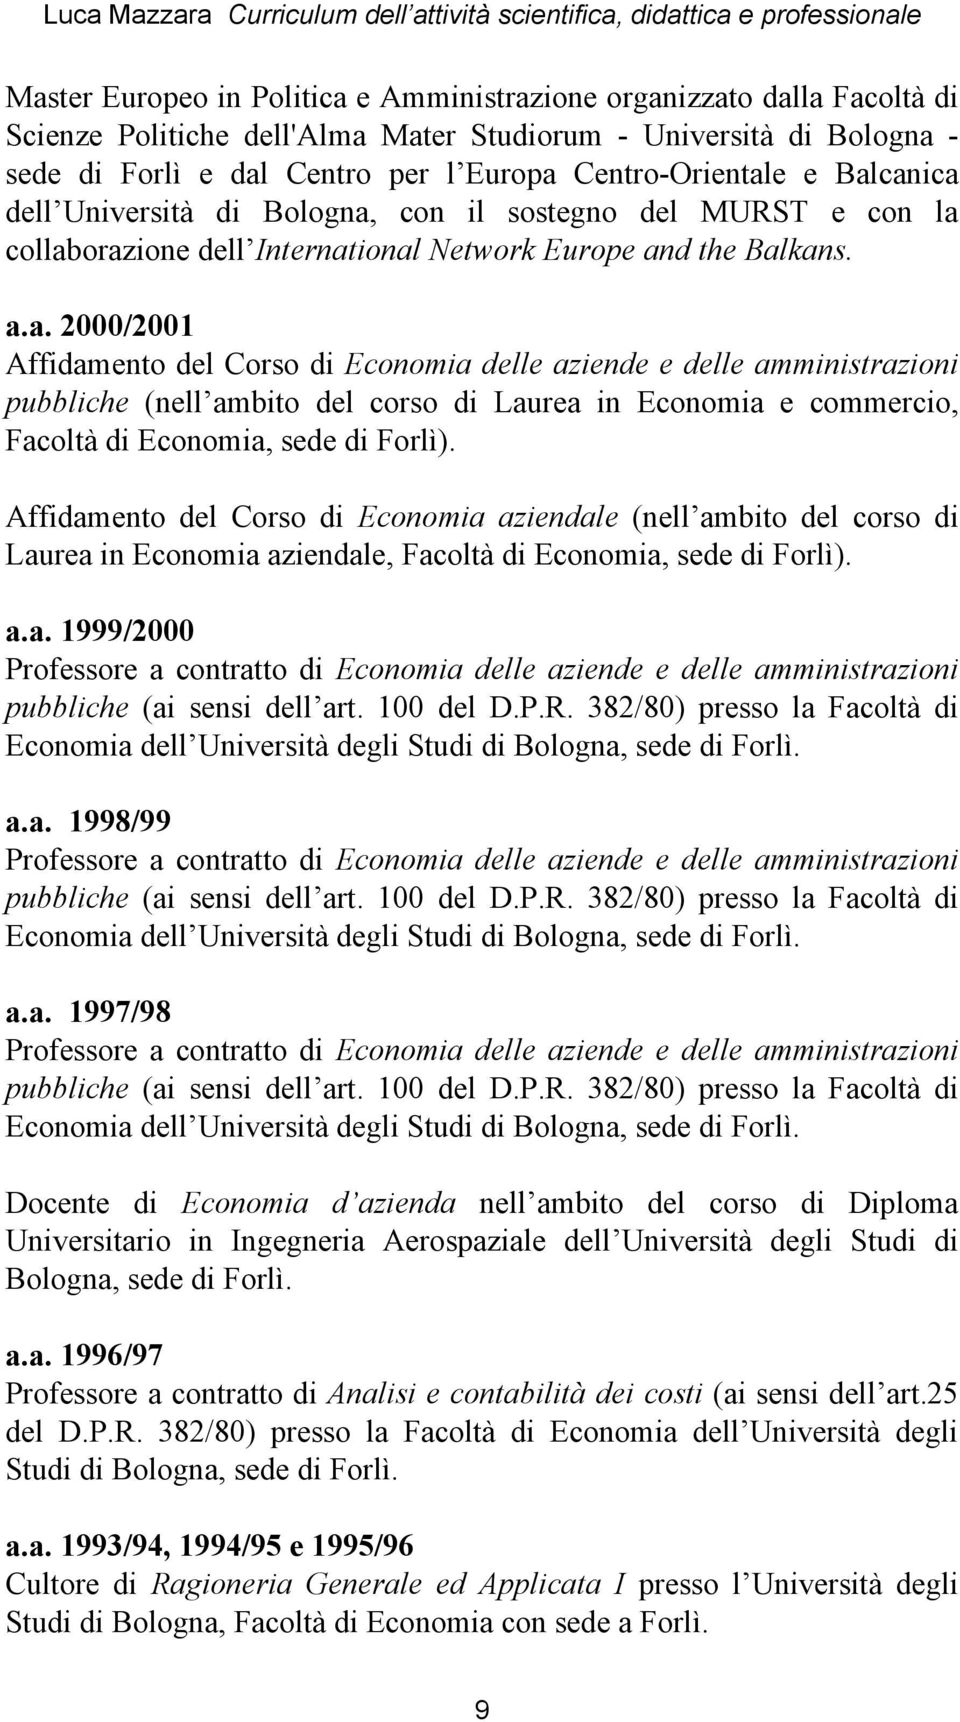 Laurea in Economia aziendale, Facoltà di Economia, sede di Forlì). a.a. 1999/2000 Professore a contratto di Economia delle aziende e delle amministrazioni pubbliche (ai sensi dell art. 100 del D.P.R.